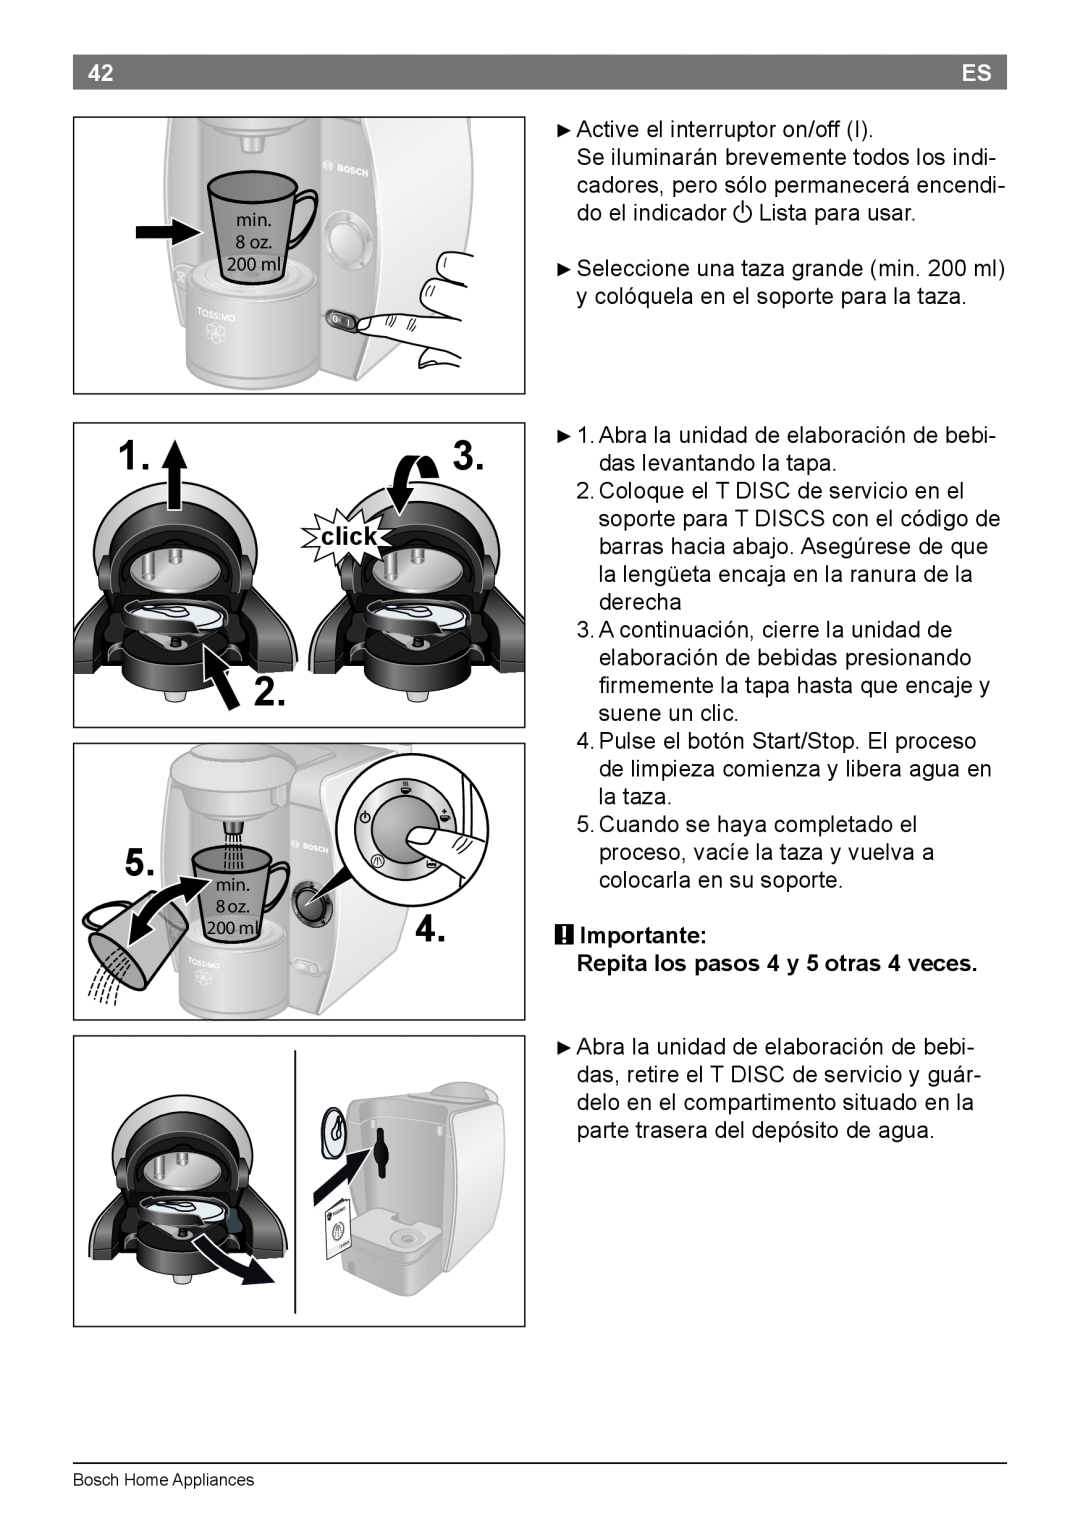 Bosch Appliances T45 instruction manual Importante Repita los pasos 4 y 5 otras 4 veces, click 